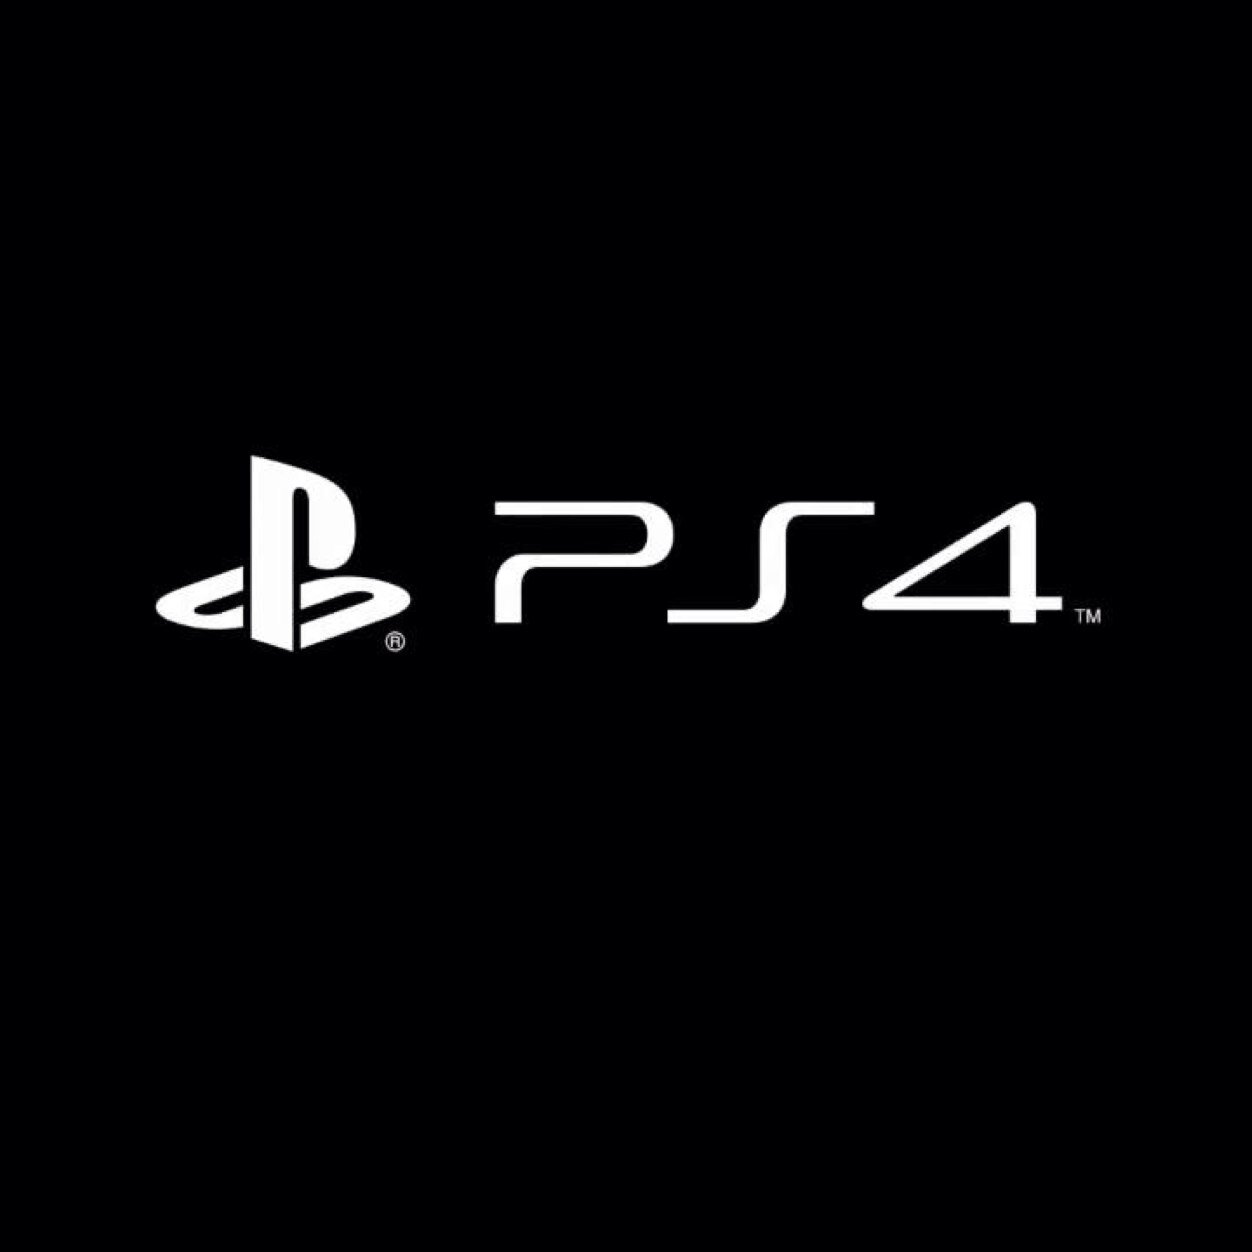 2月22日発売のPS4の最新情報をお知らせしていきます。PS4を購入予定の方は是非ともフォローお願いします！ヾ(＠⌒ー⌒＠)ノ